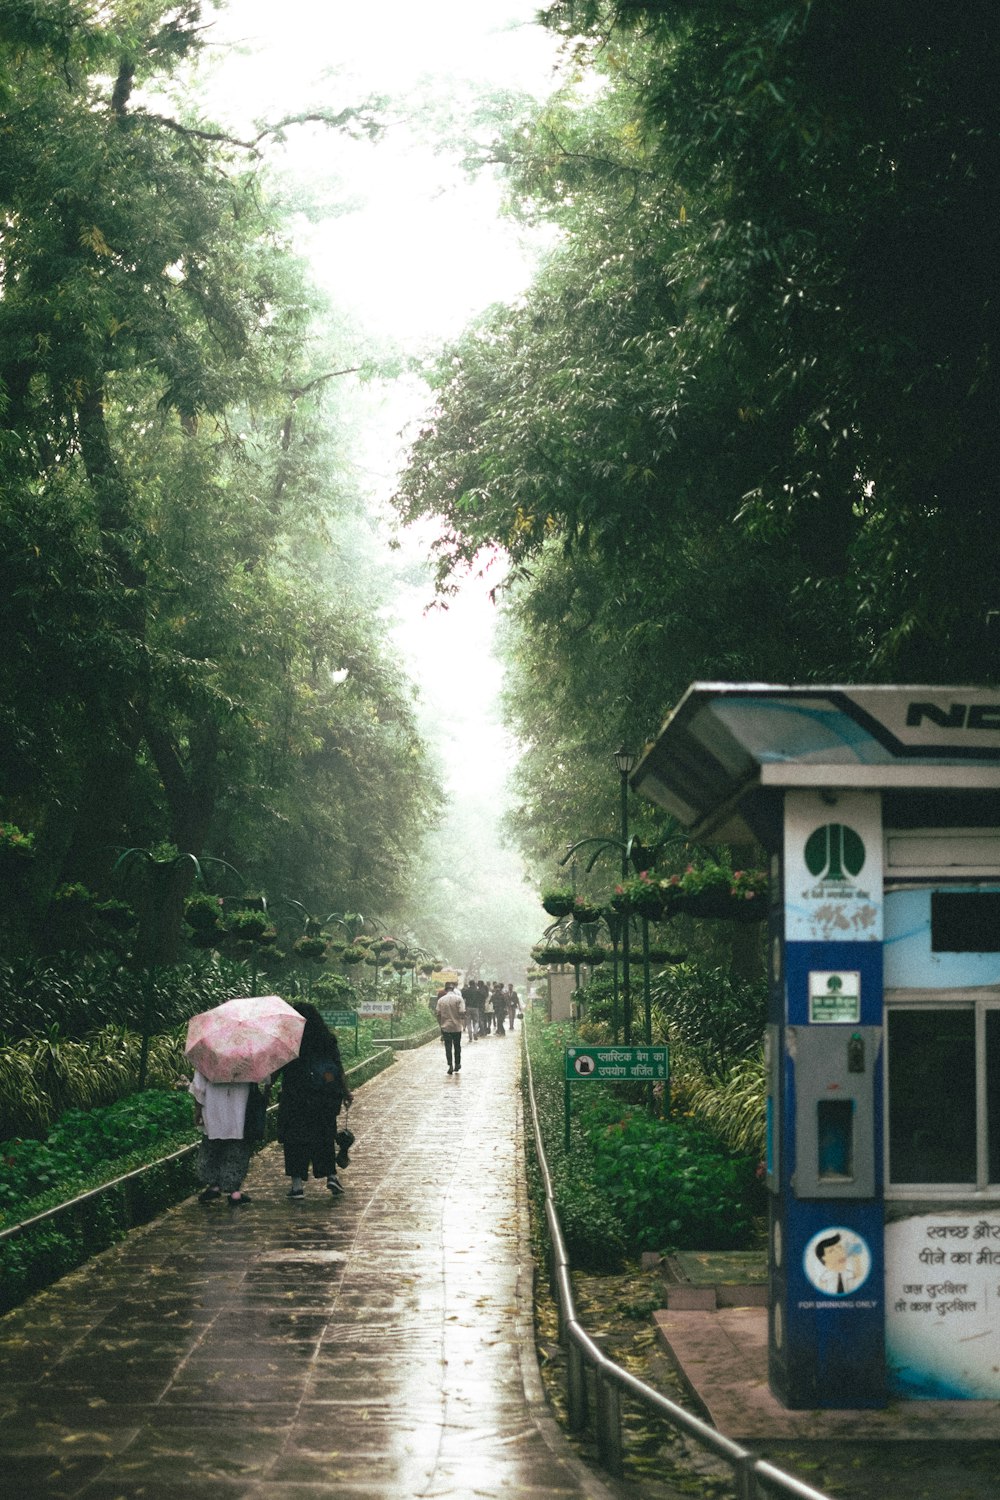 Eine Gruppe von Menschen, die mit Regenschirmen einen Pfad entlang gehen